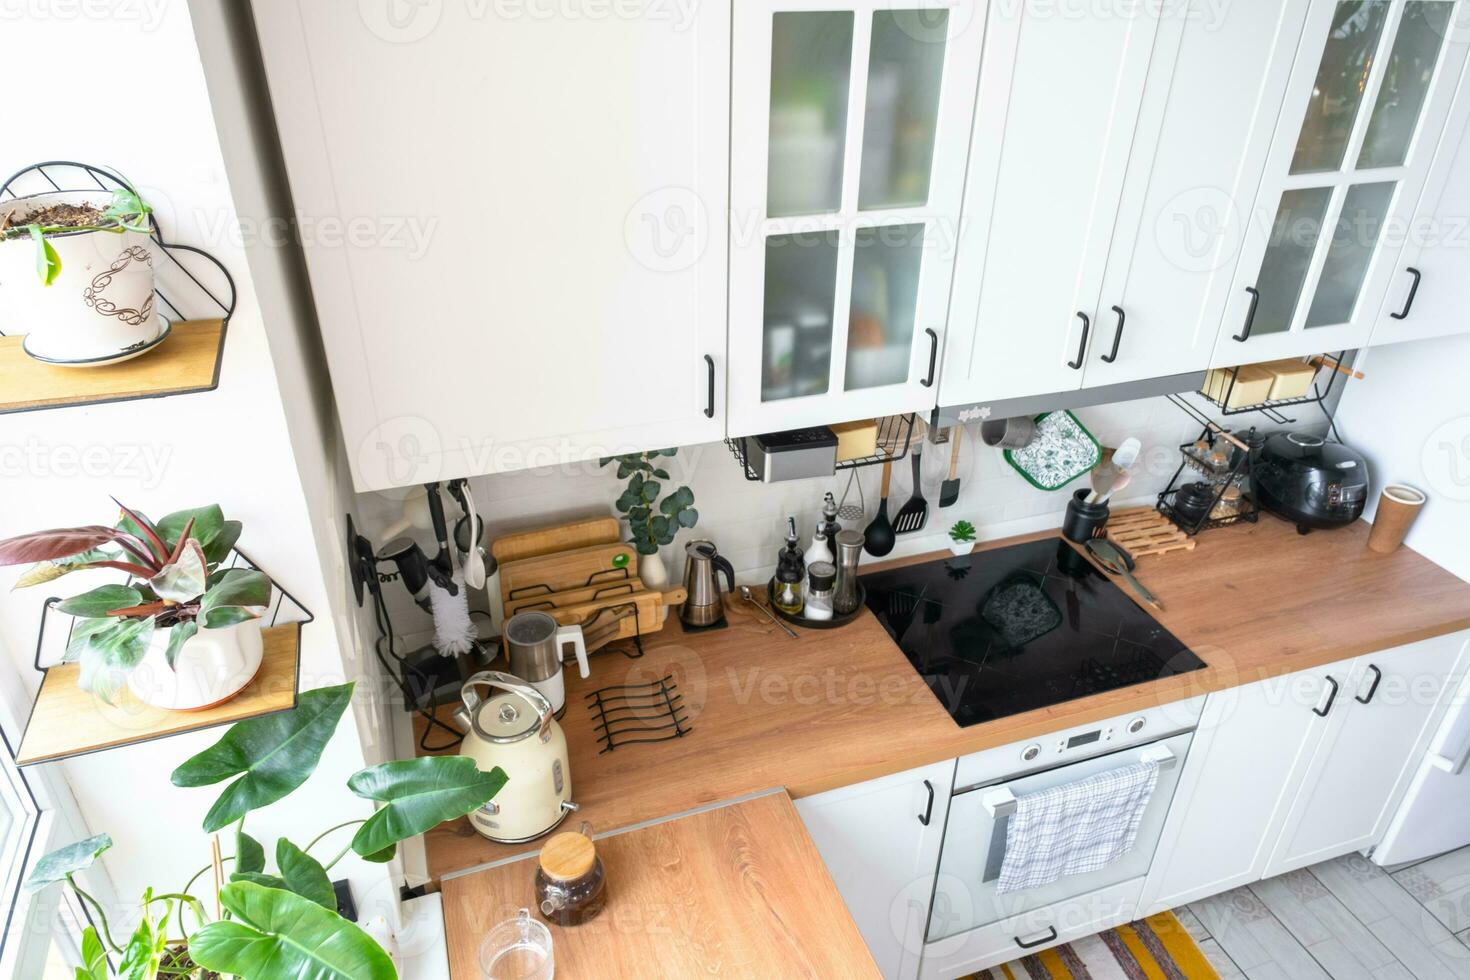 ligero blanco moderno rústico cocina decorado con en conserva plantas, estilo loft cocina utensilios interior de un casa con plantas de casa foto